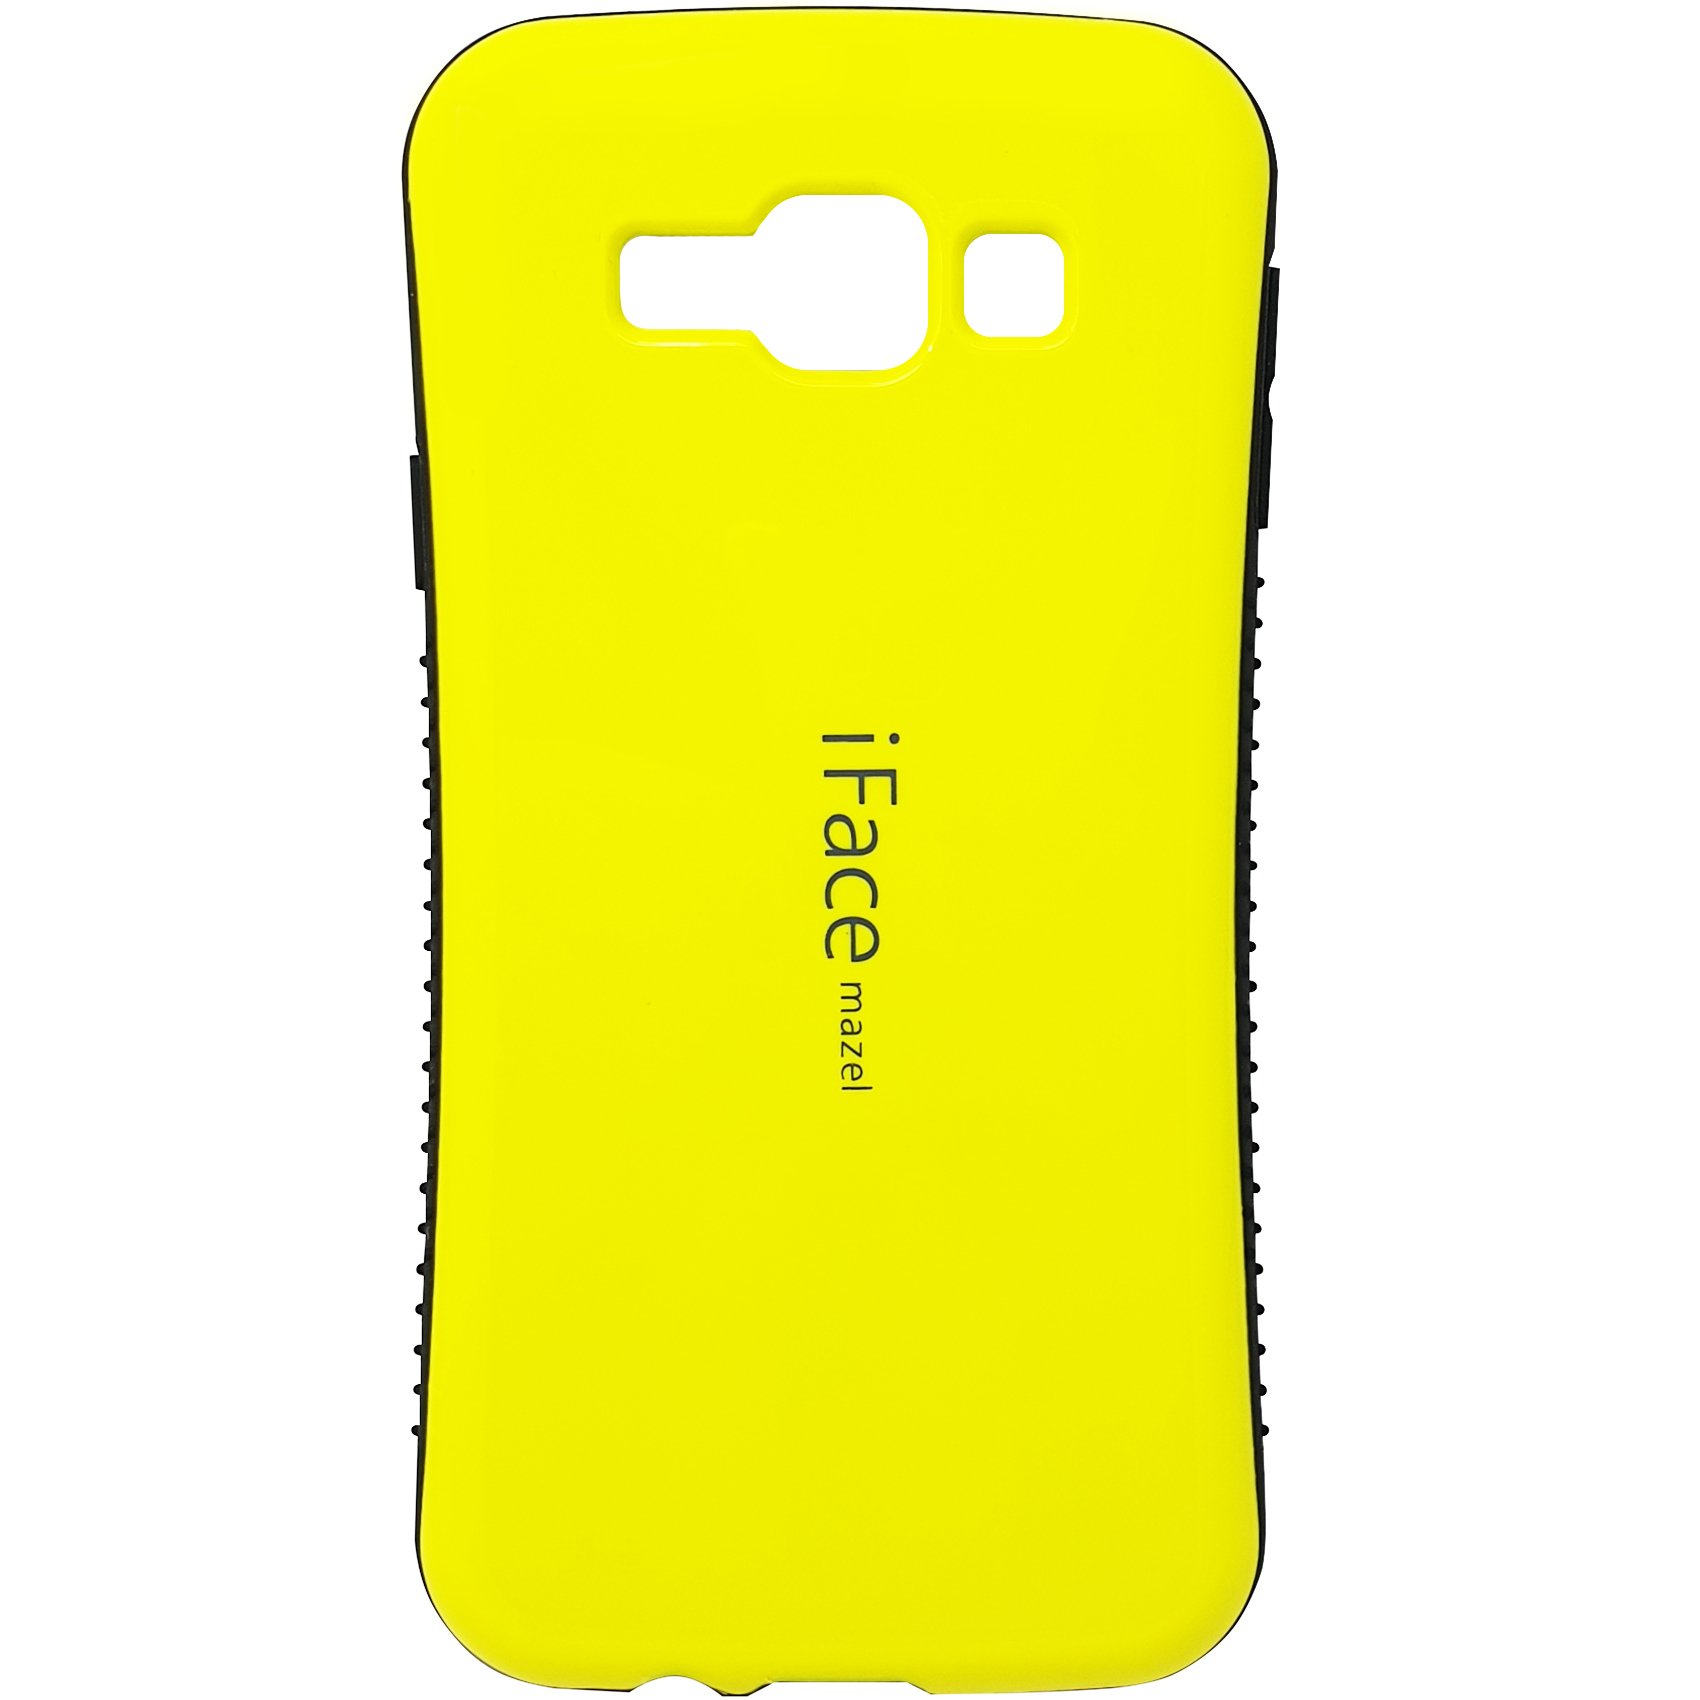 کاور آی فیس مدل TG99A مناسب برای گوشی موبایل سامسونگ Galaxy E7 2015 / E700